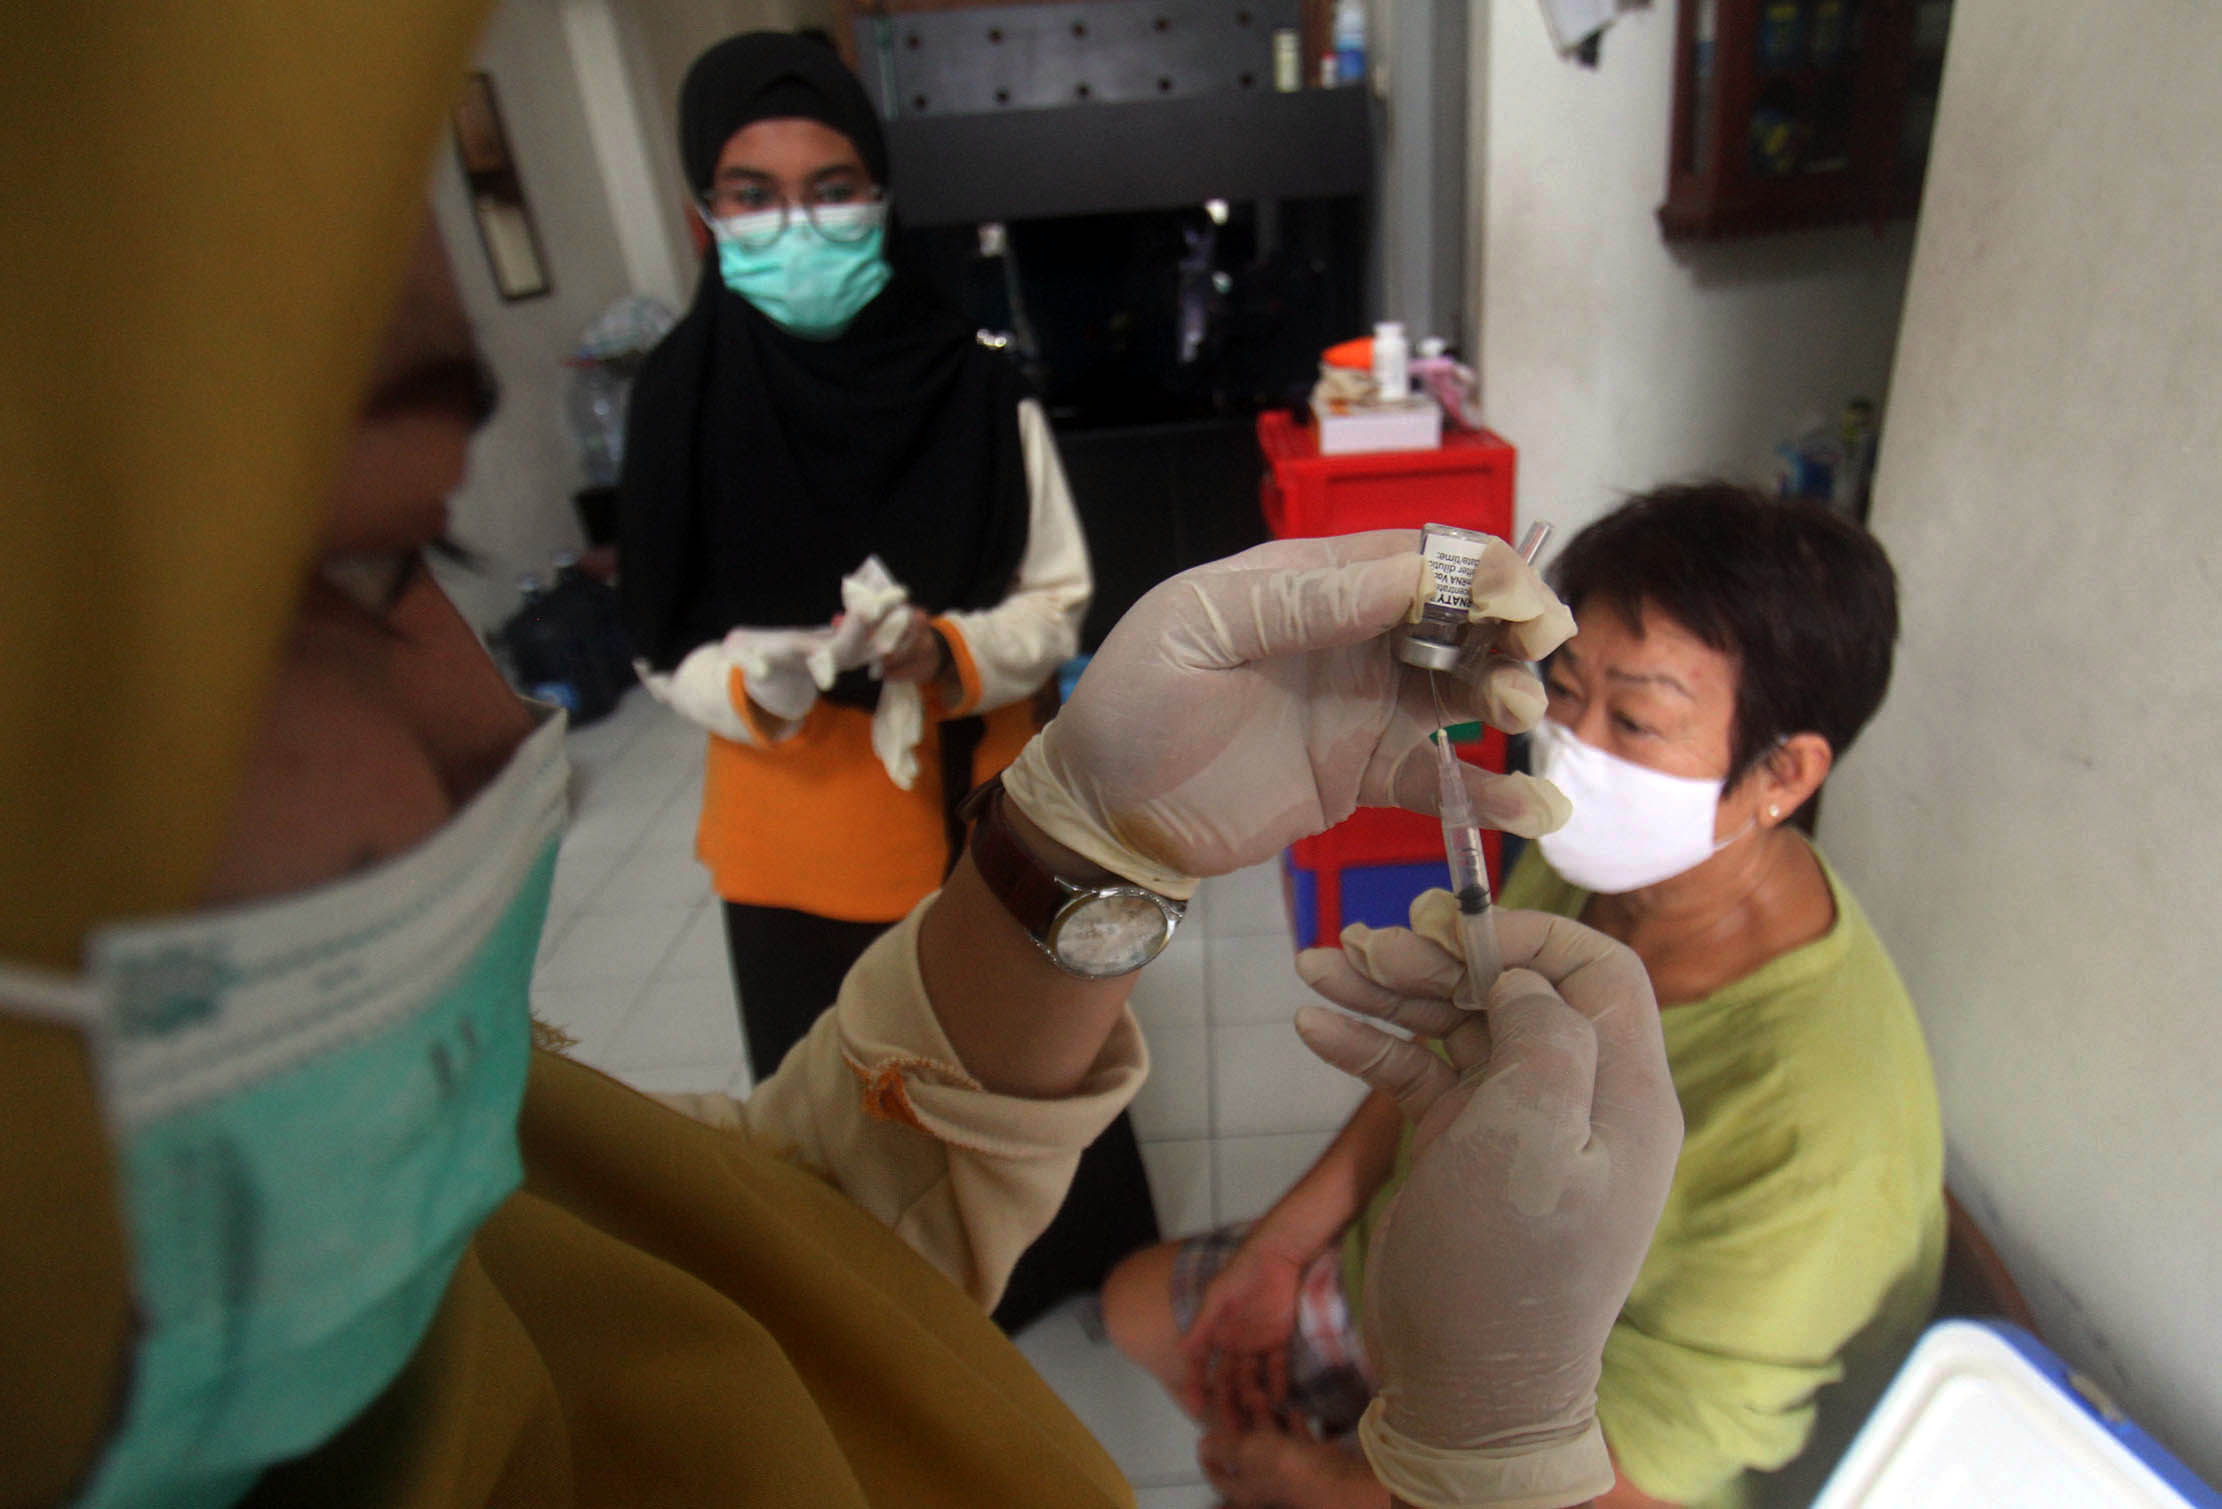 Pelaksanaan vaksinasi dosis ke 3 atau booster yang ditujukan untuk para lansia di kawasan Perumahan Banjar Wijaya Kecamatan Cipondoh Kota Tangerang, Senin 17 Januari 2022. Foto : Panji Asmoro/TrenAsia